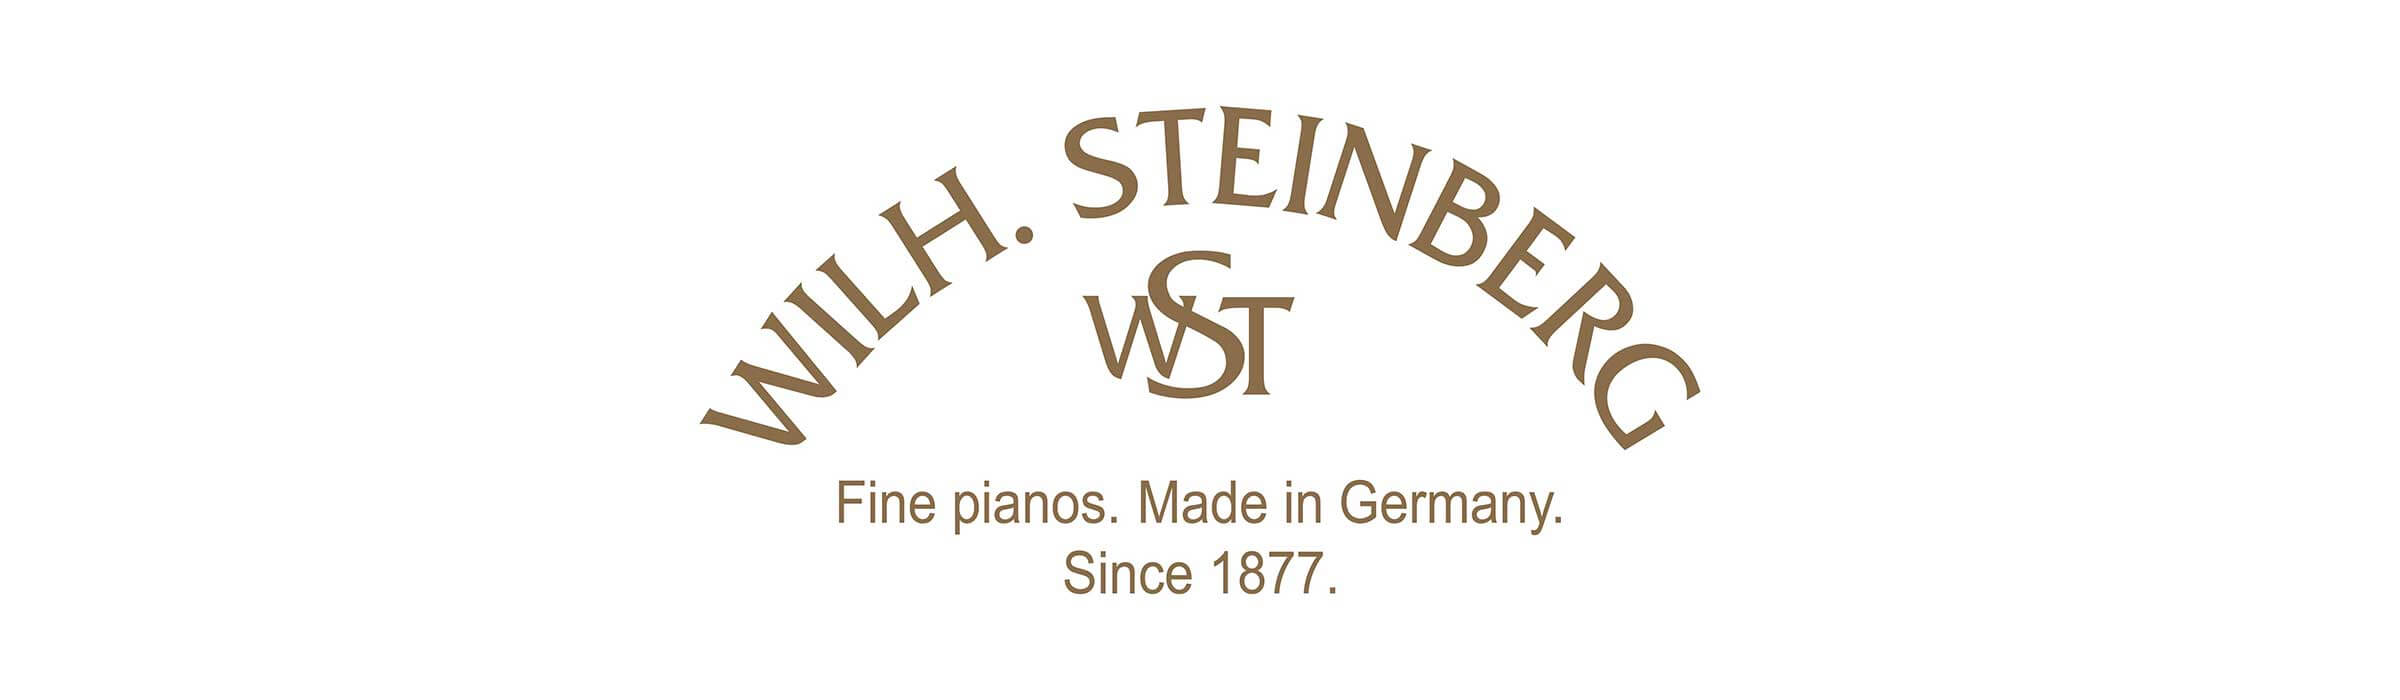 ピアノ用に部品を供給するメーカーとして、ドイツ・アイゼンベルグにて1877年に創業したメーカーです。現在はドイツ製のモデルに加えて、海外向け仕様のカワイピアノ等を製作している中国のパーソンズ社にて作られるモデルがございます。当店に展示のモデルは中国製の物となります。 CONTENTS展示アップライト […]